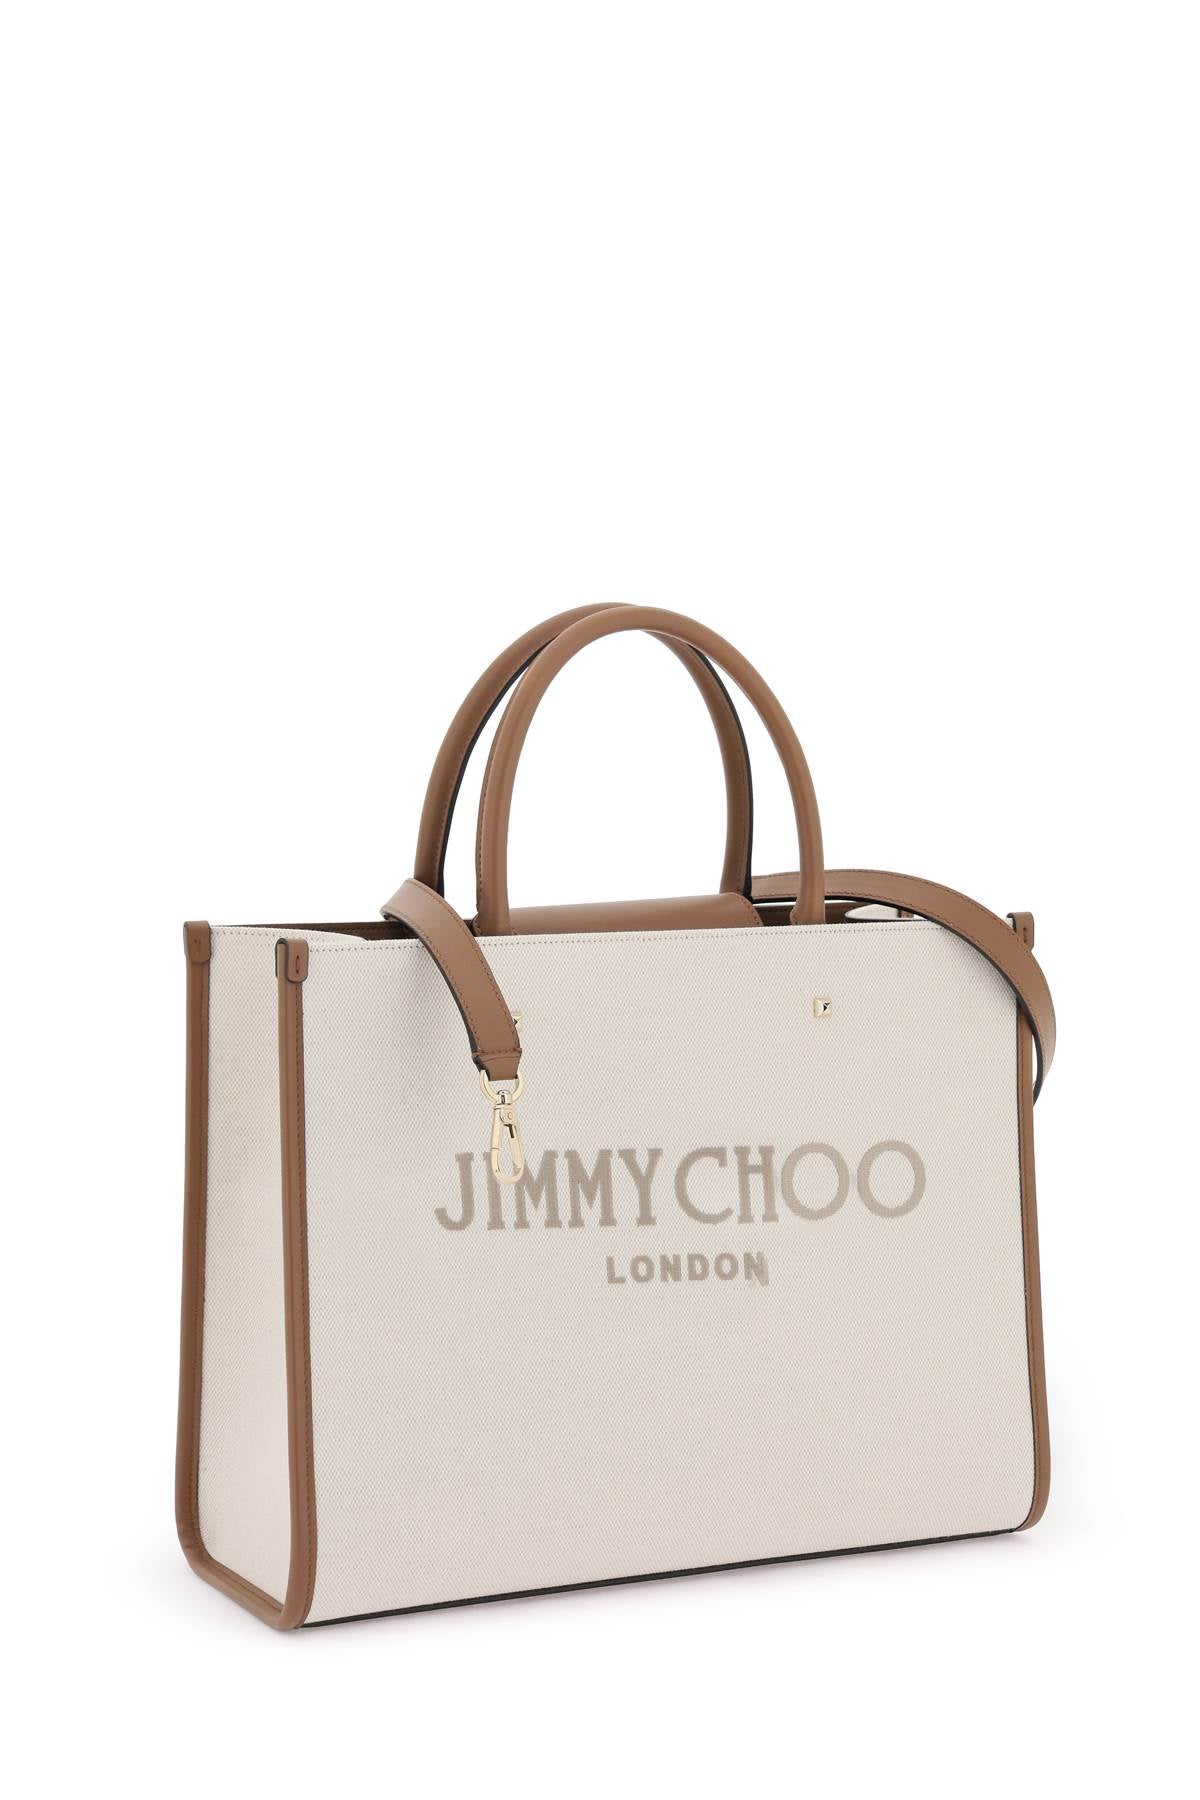 Jimmy choo avenue m tote bag-2